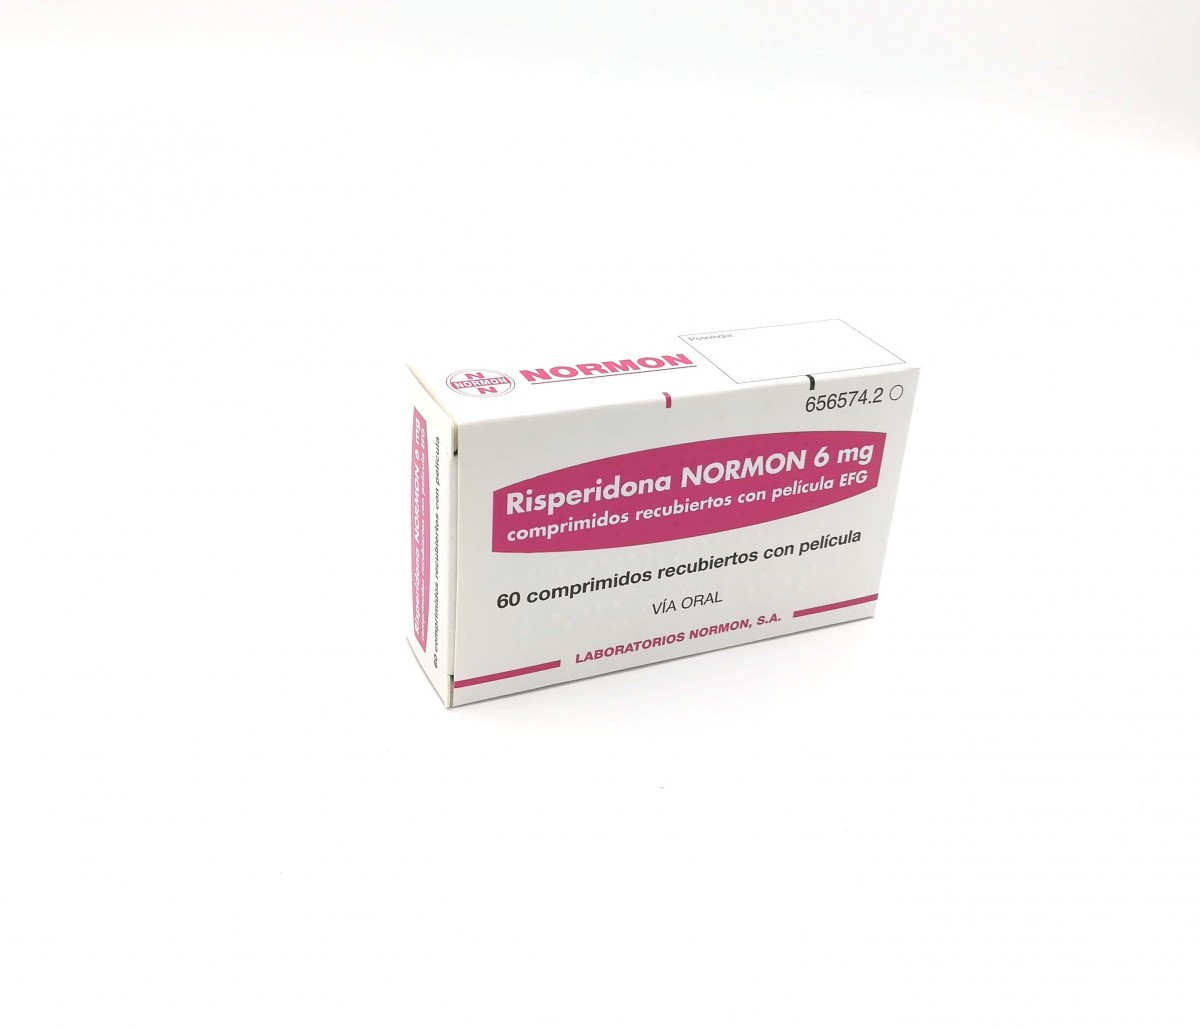 RISPERIDONA NORMON 6 mg COMPRIMIDOS RECUBIERTOS CON PELICULA EFG, 30 comprimidos fotografía del envase.